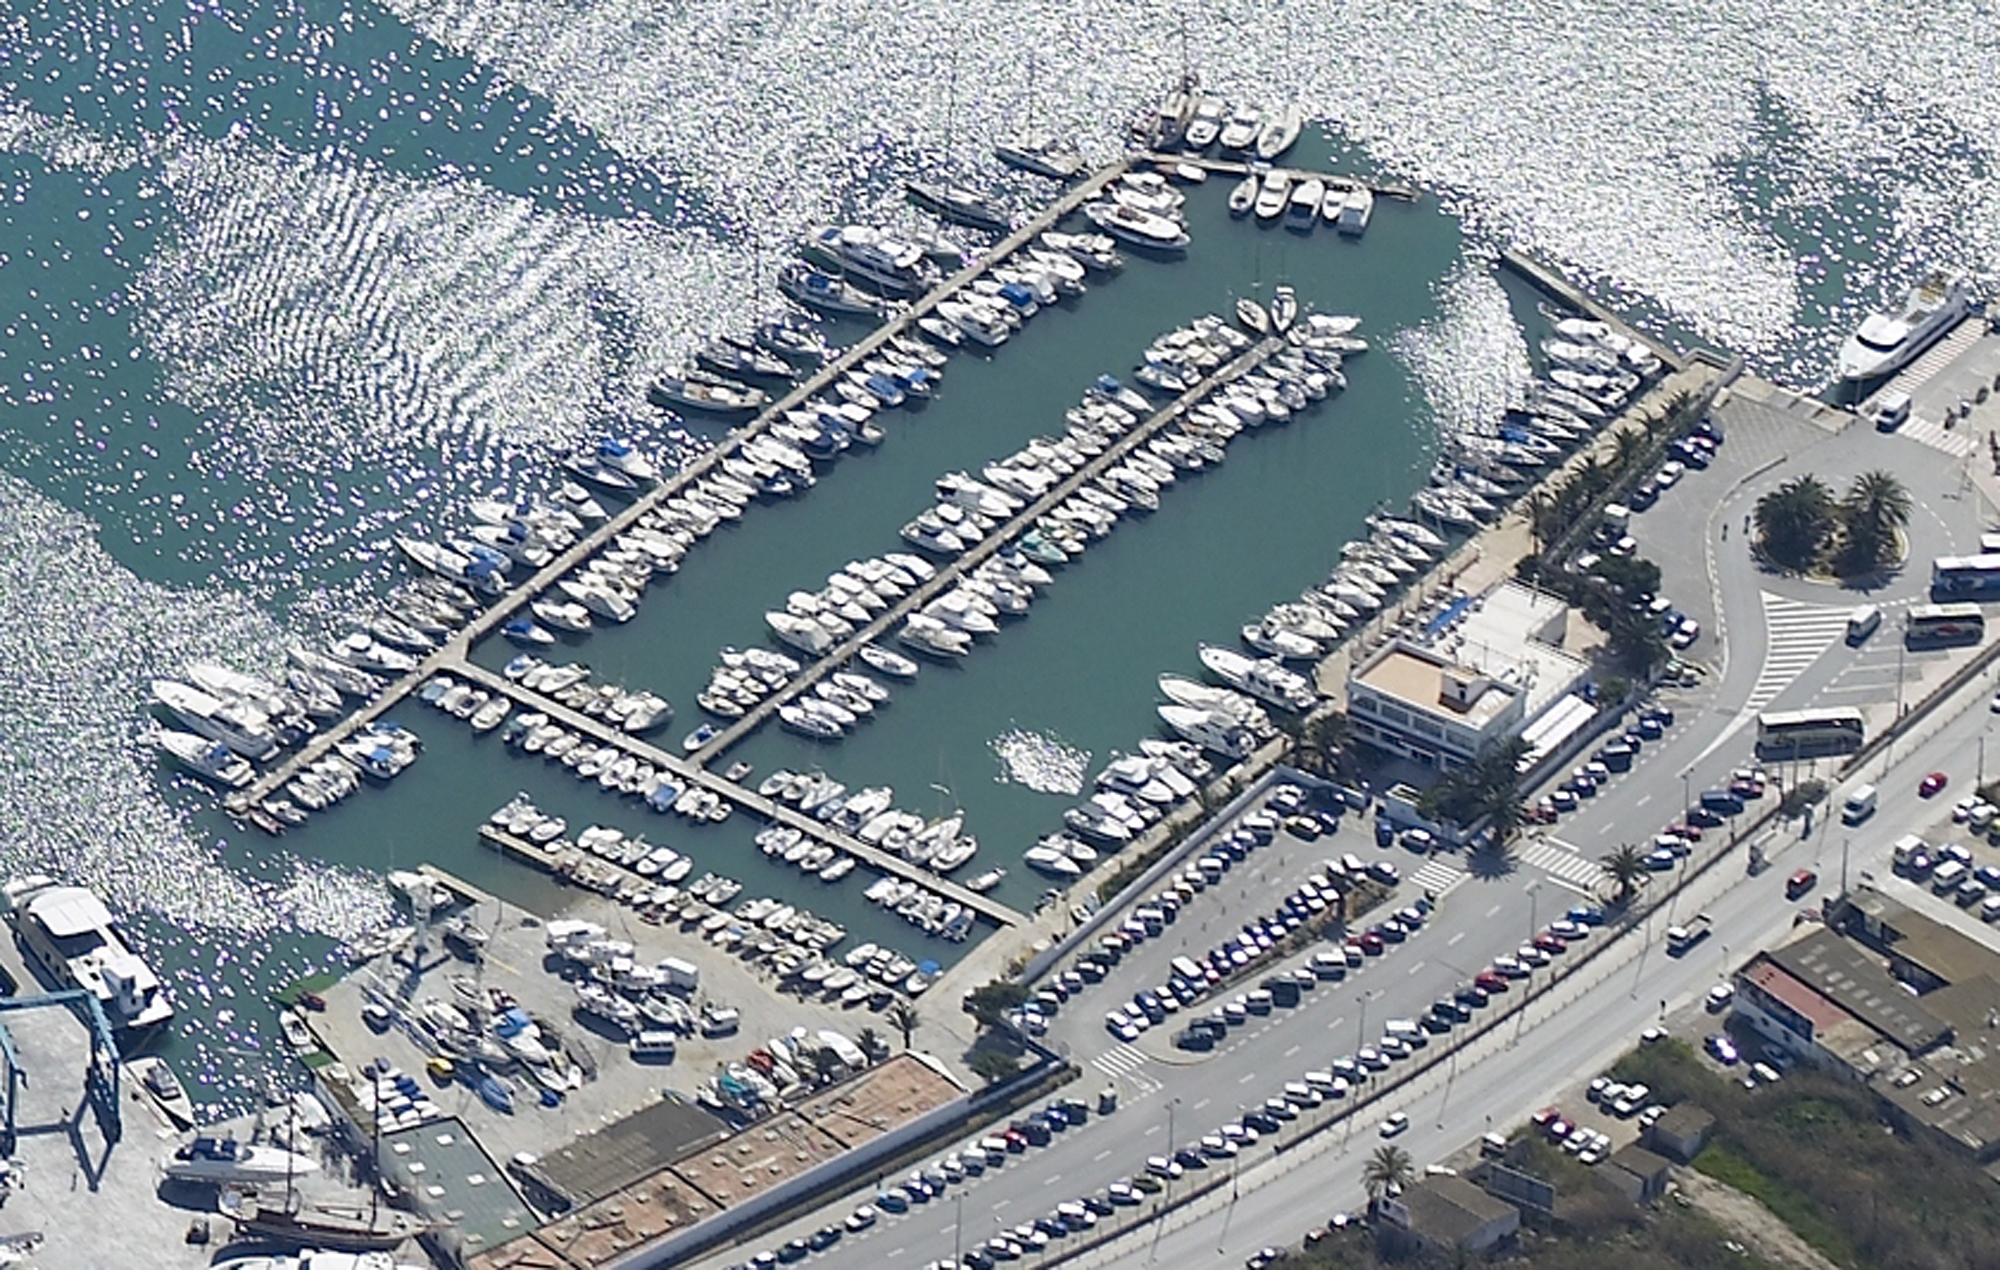 Genehmigung der Ausschreibungsunterlagen für die Verwaltung einer Hafeneinrichtung für kleine und mittlere Yachten im Hafen von Eivissa